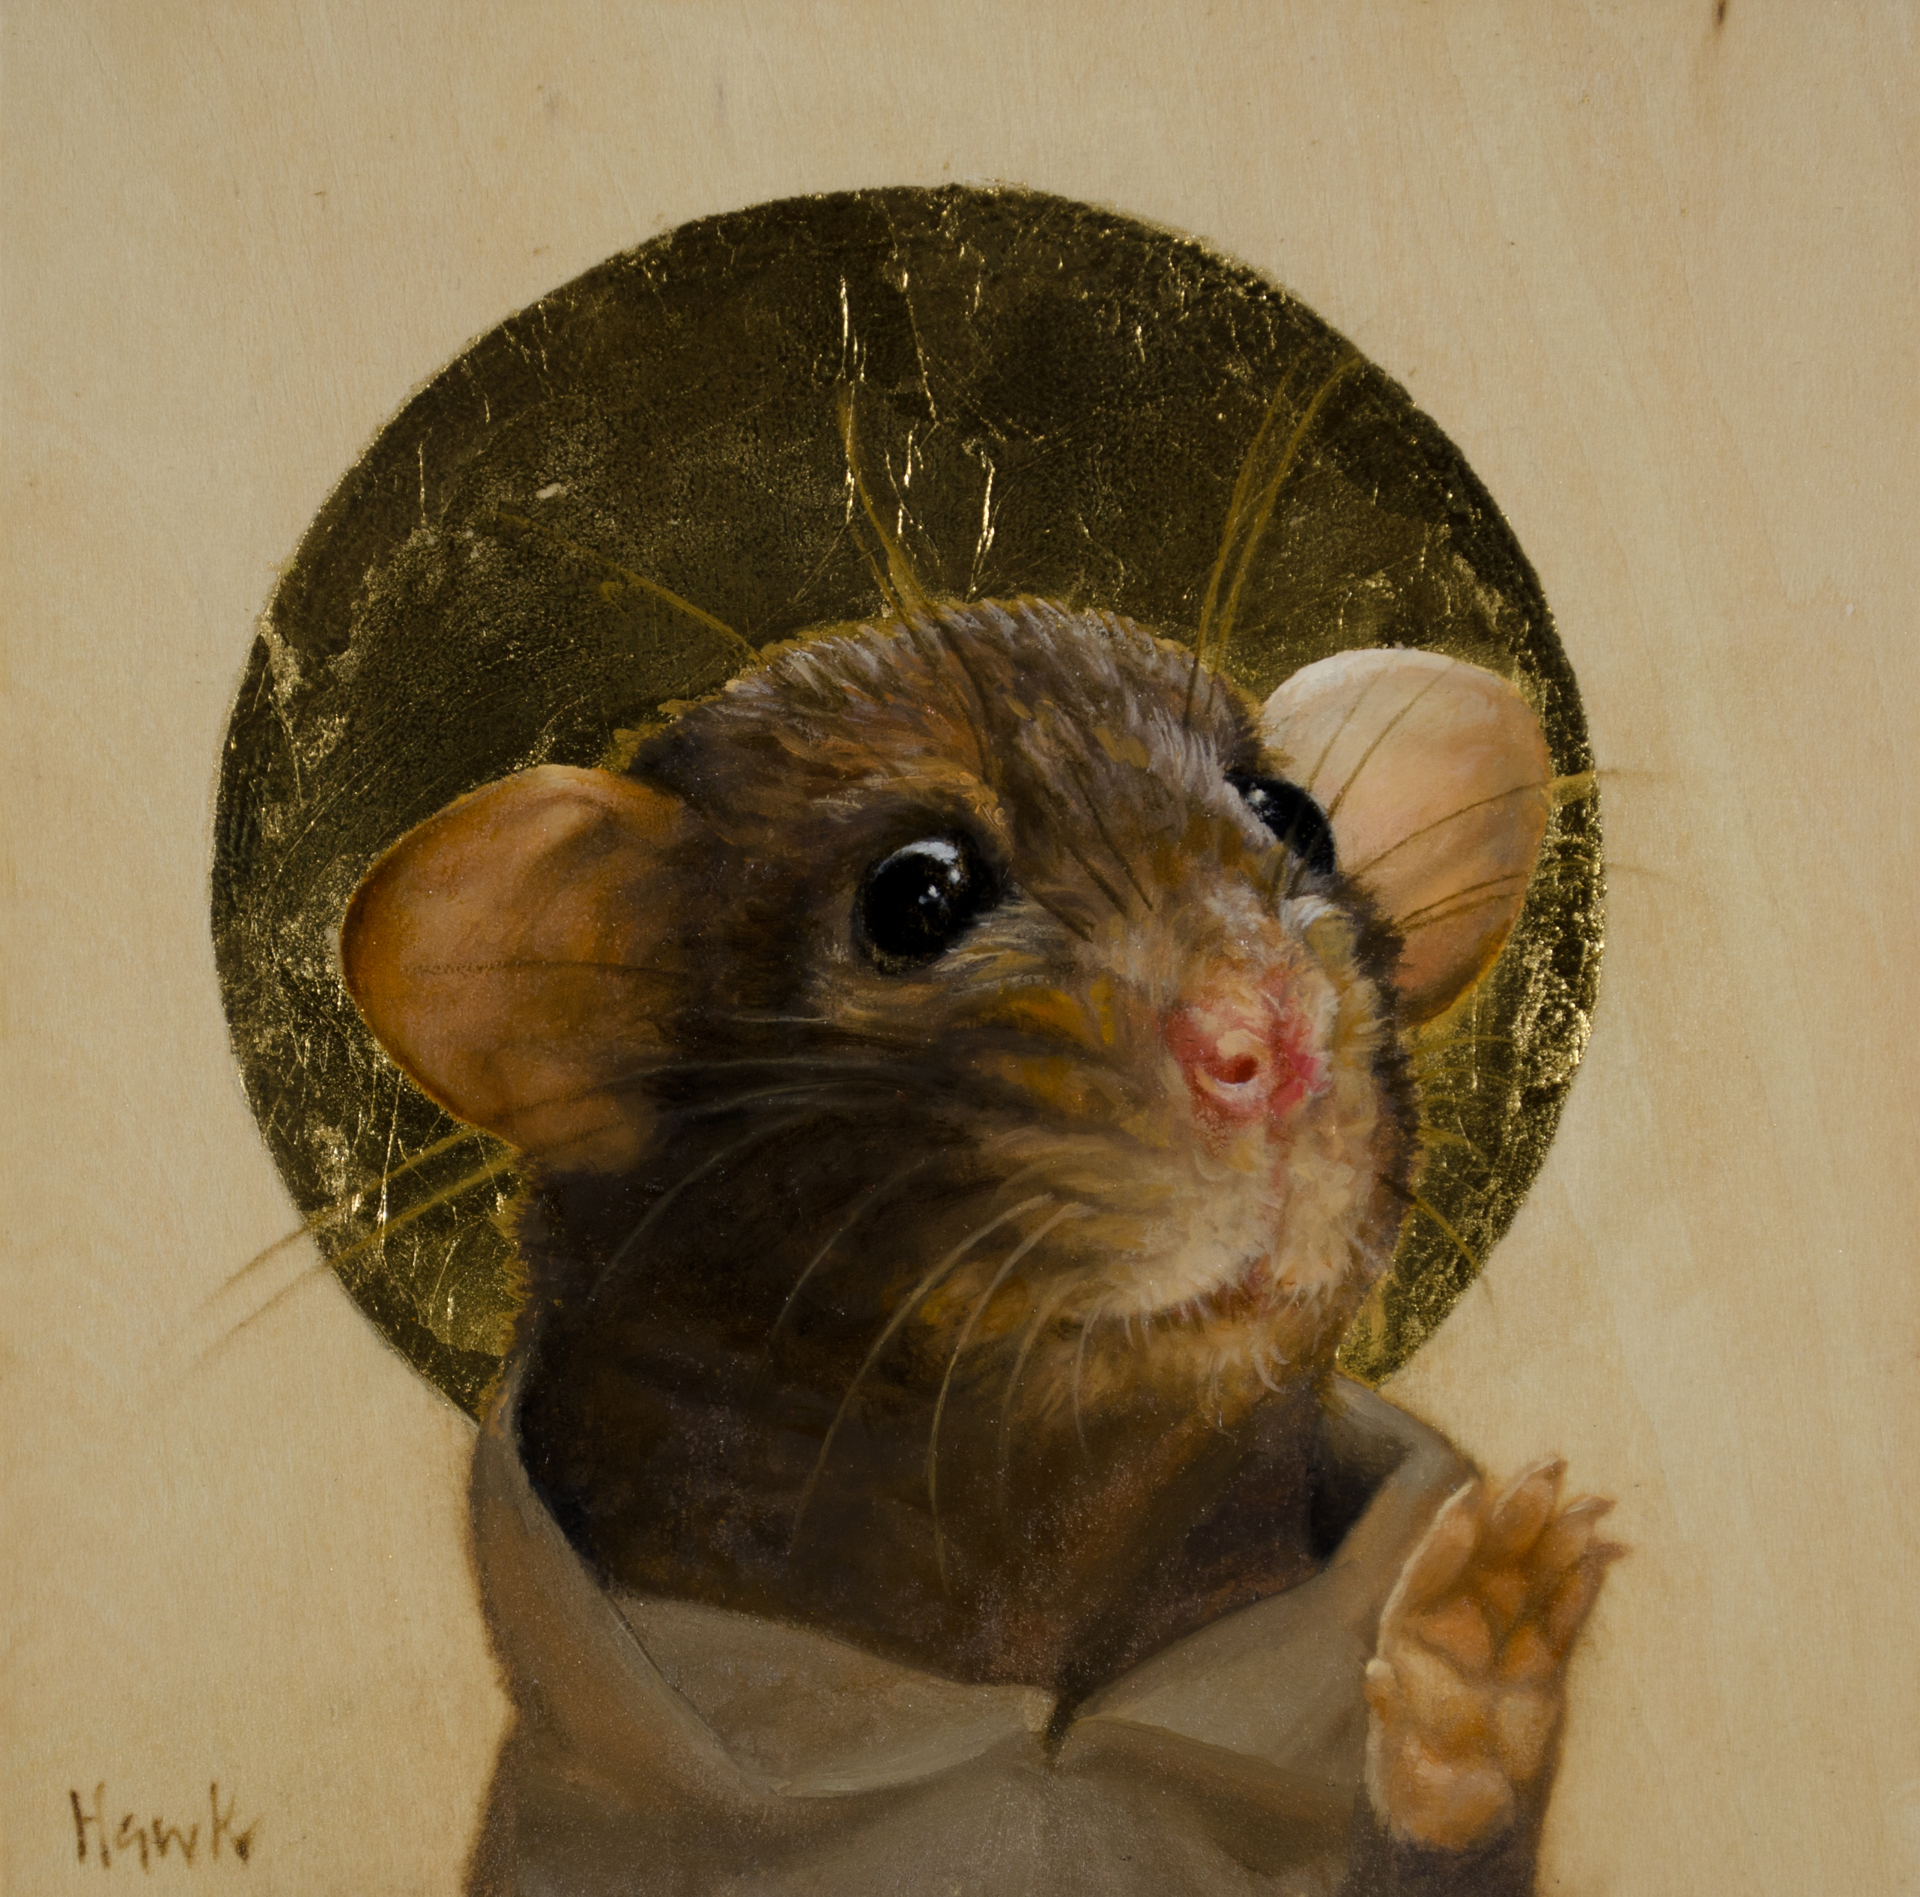 Devout Mouse by Dana Hawk